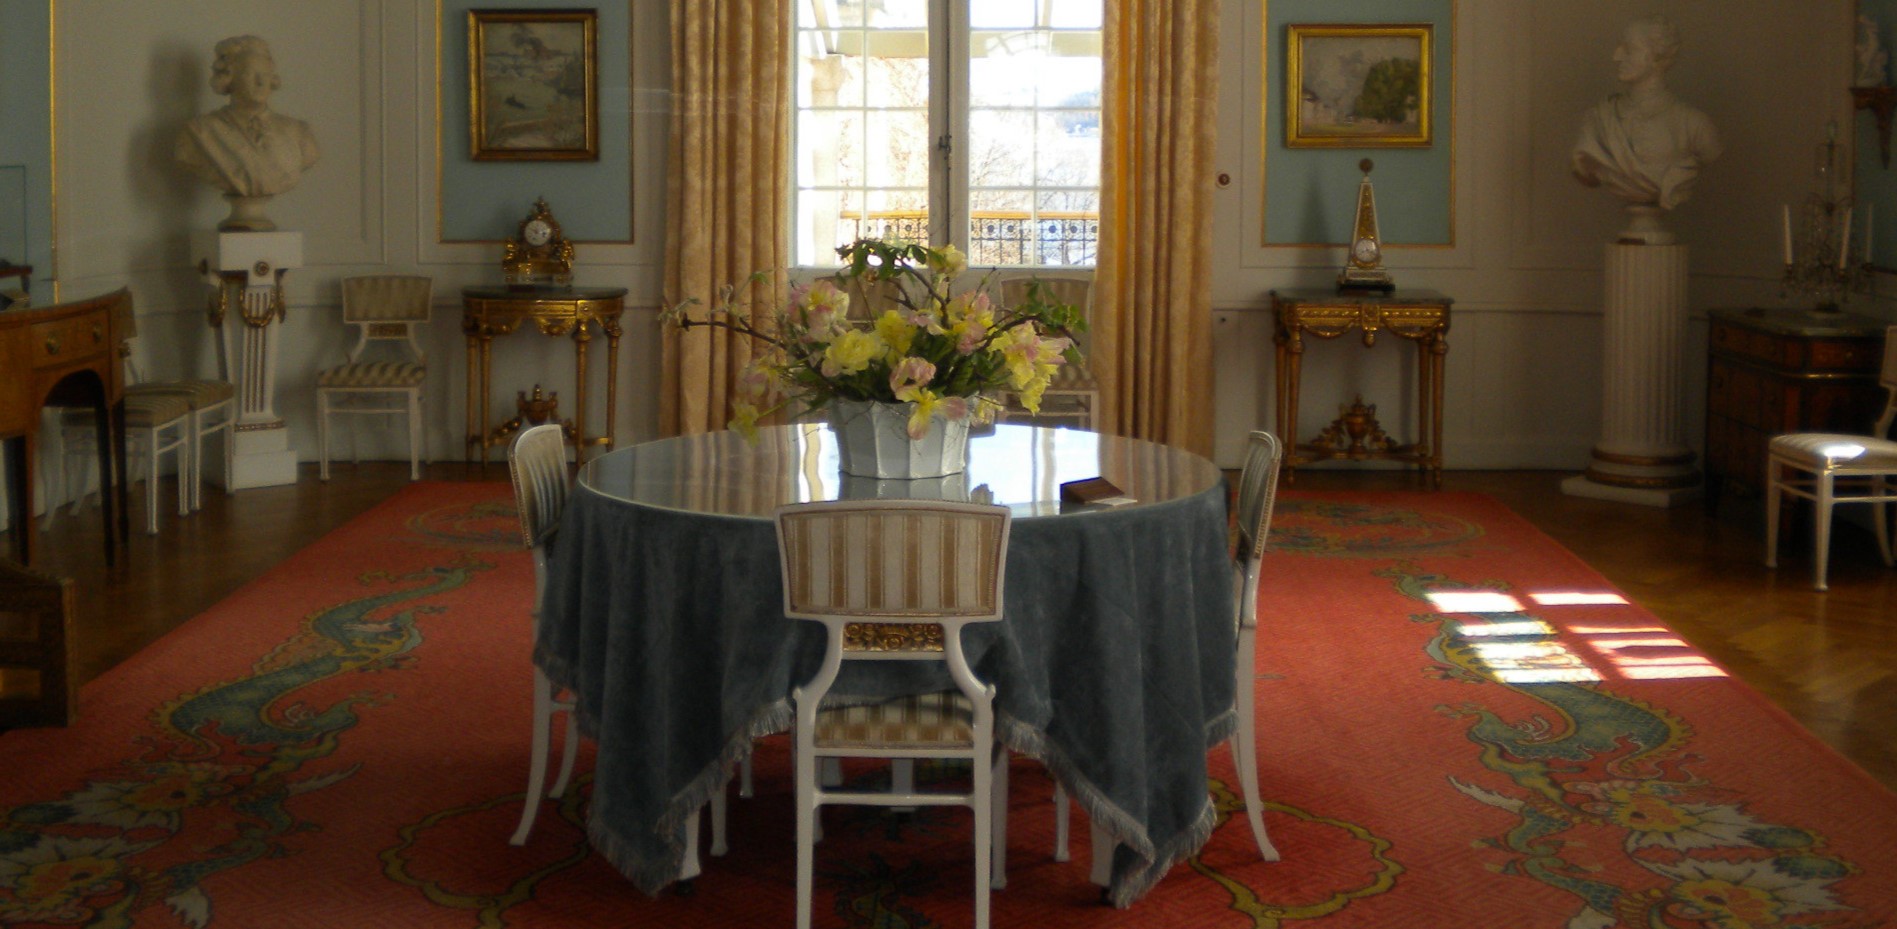 Мебель и декор золотого цвета добавят роскоши в английский интерьер